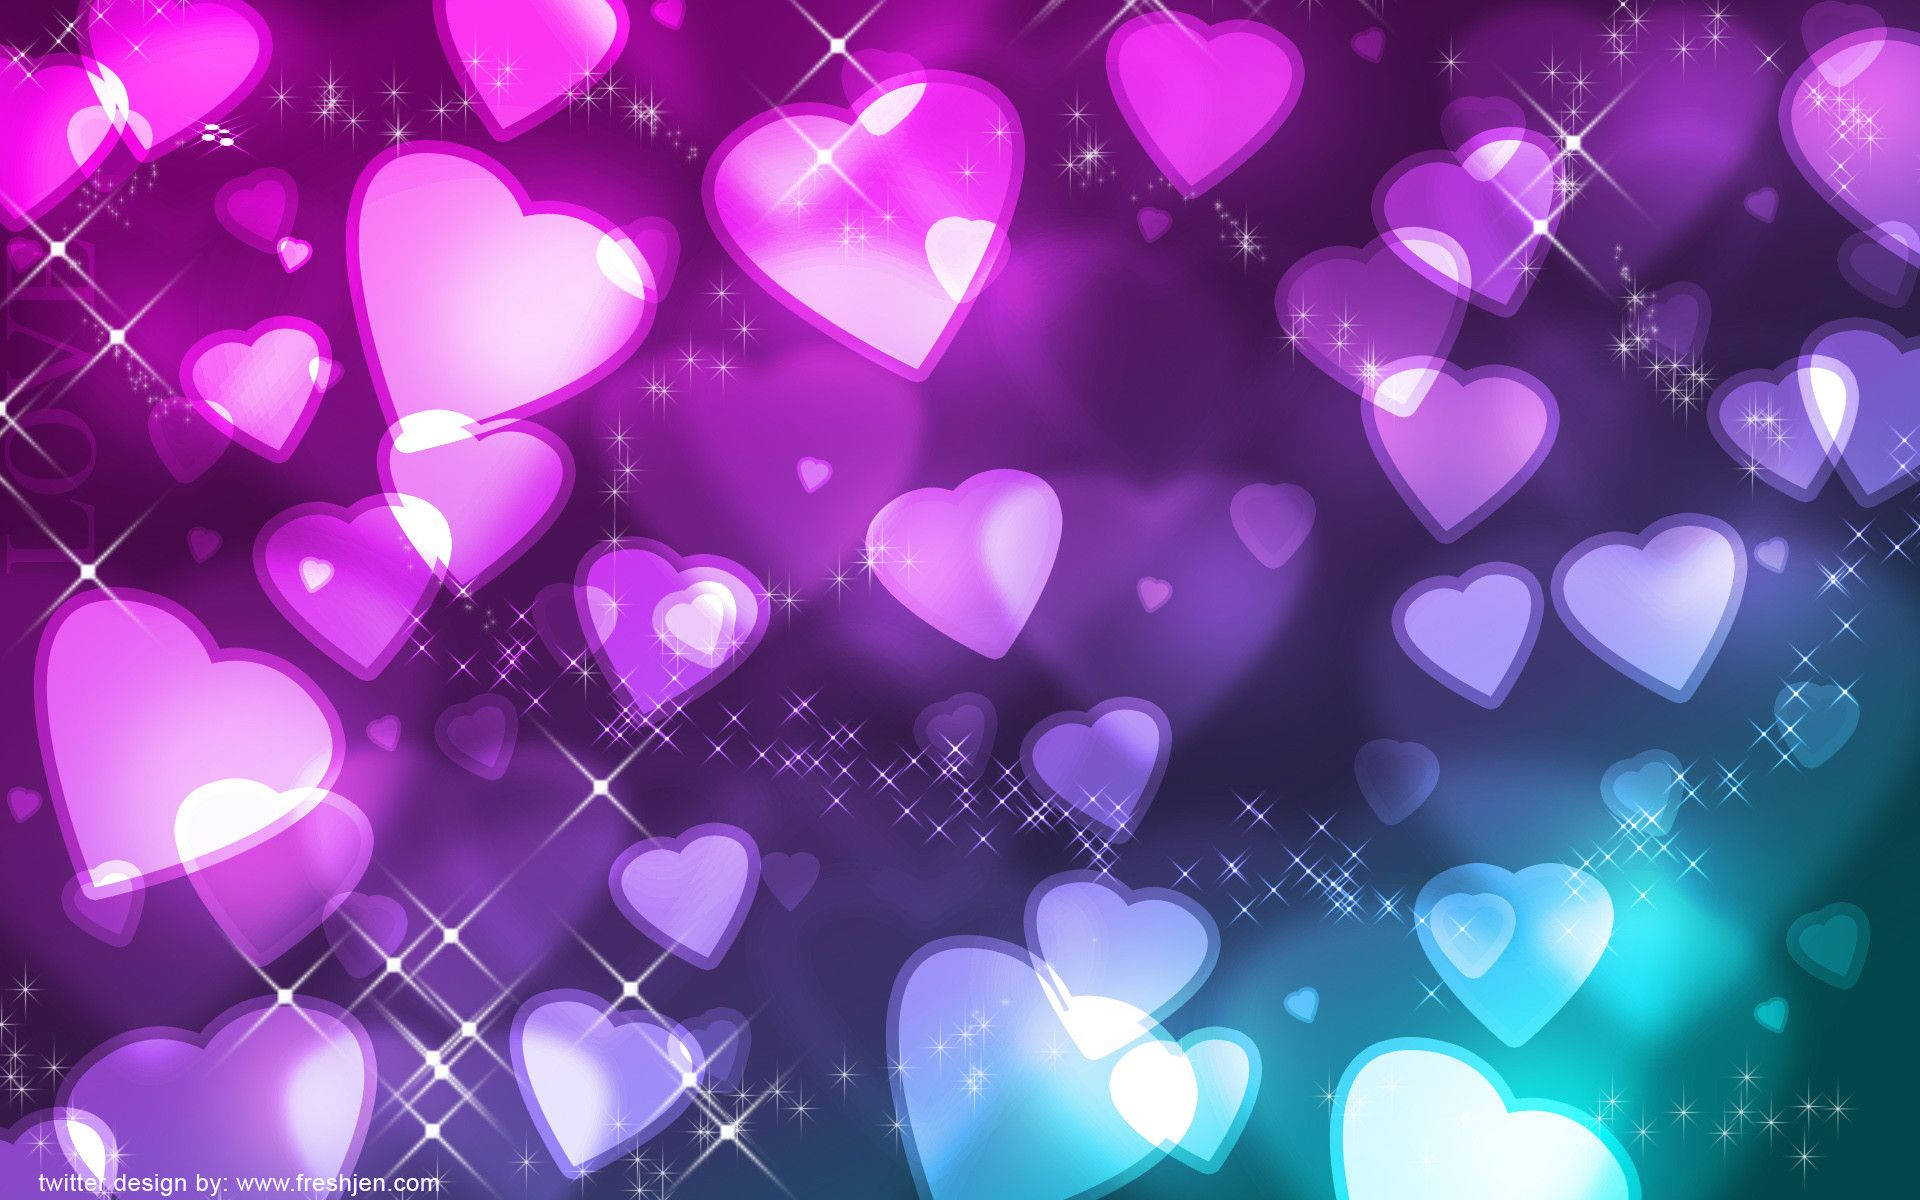 Heart Background Romantic  Free image on Pixabay